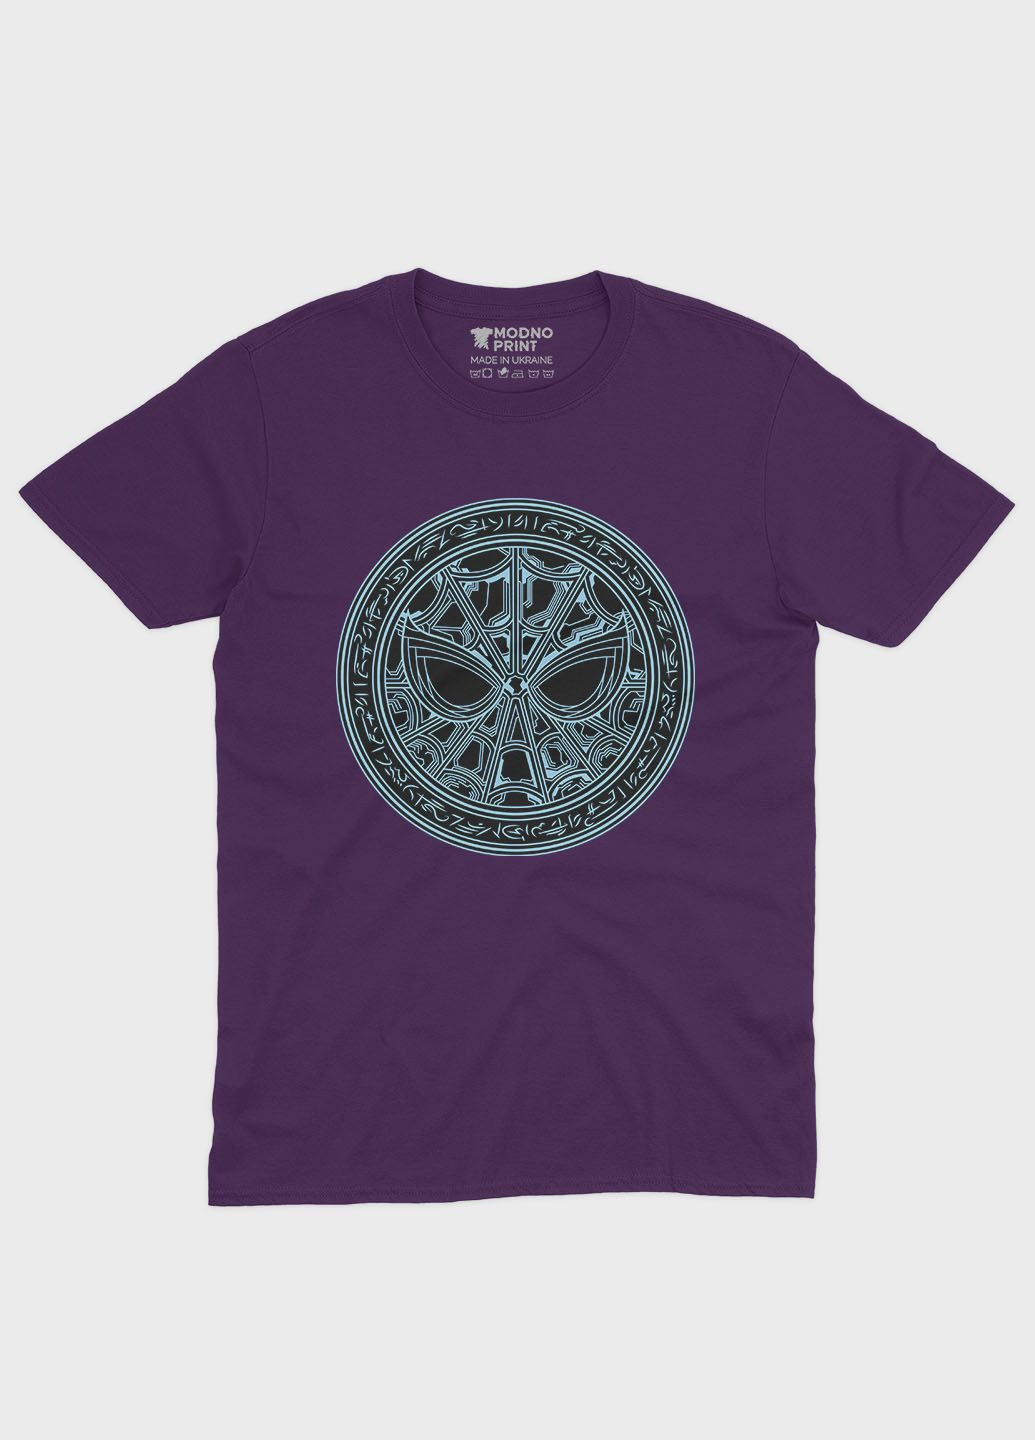 Фиолетовая демисезонная футболка для девочки с принтом супергероя - человек-паук (ts001-1-dby-006-014-088-g) Modno